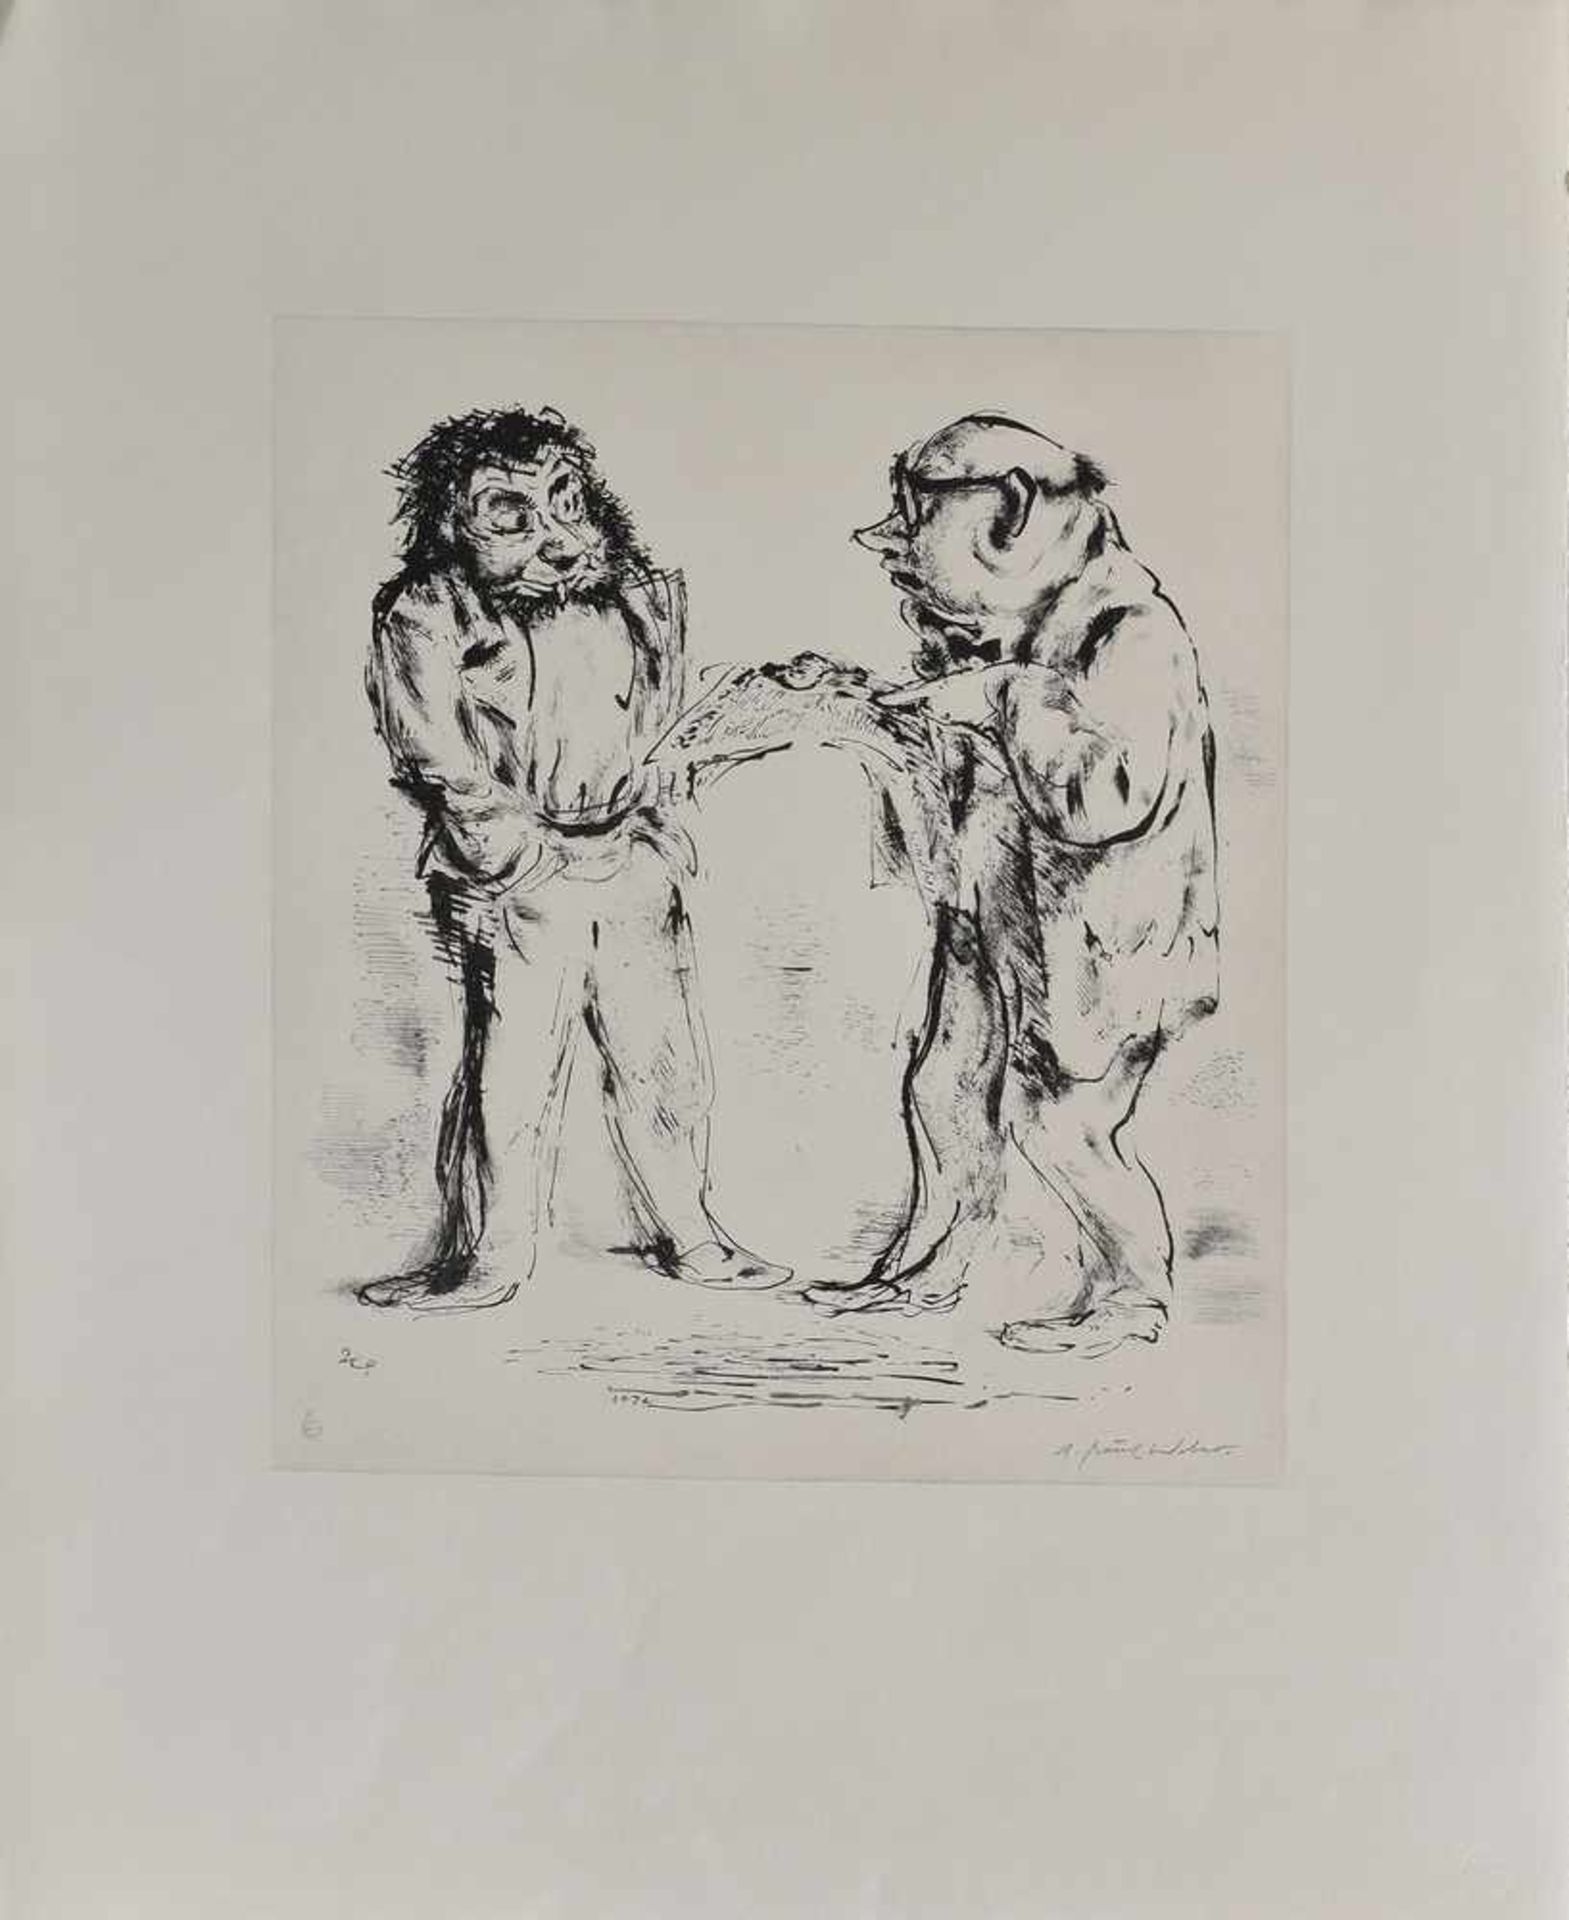 6 Diverse Weber, A. Paul (1893-1980) "Menschendarstellungen", Griffelkunst, u.r.sign., 66x54cm, - Image 4 of 7